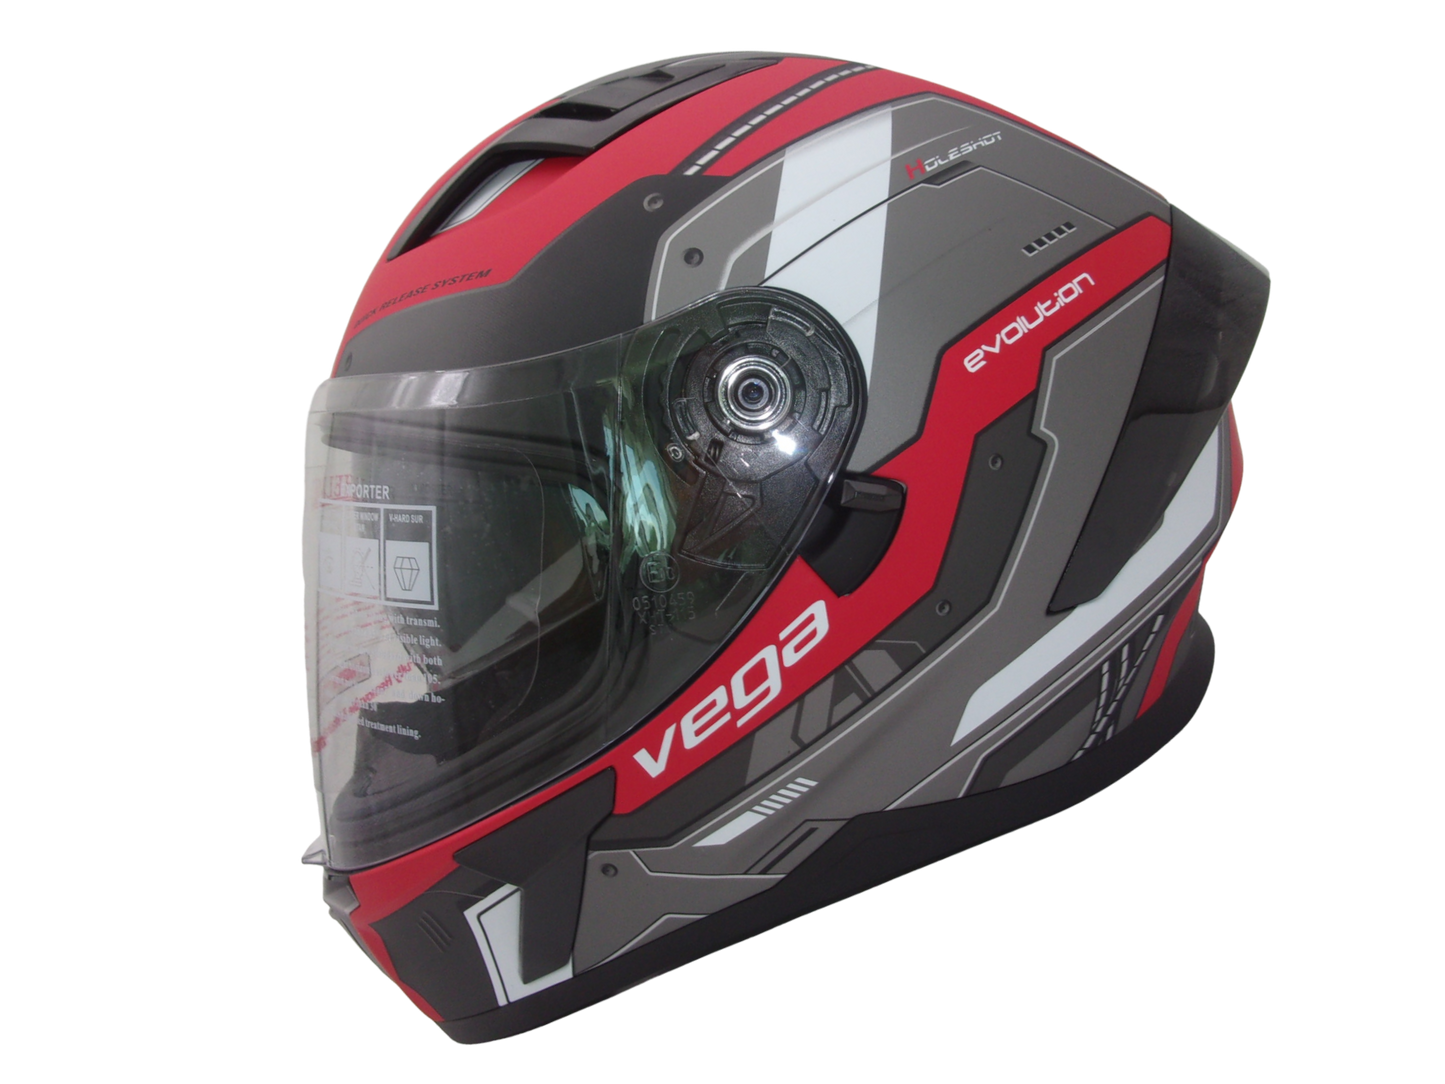 Vega Holeshot Full Face Helmet